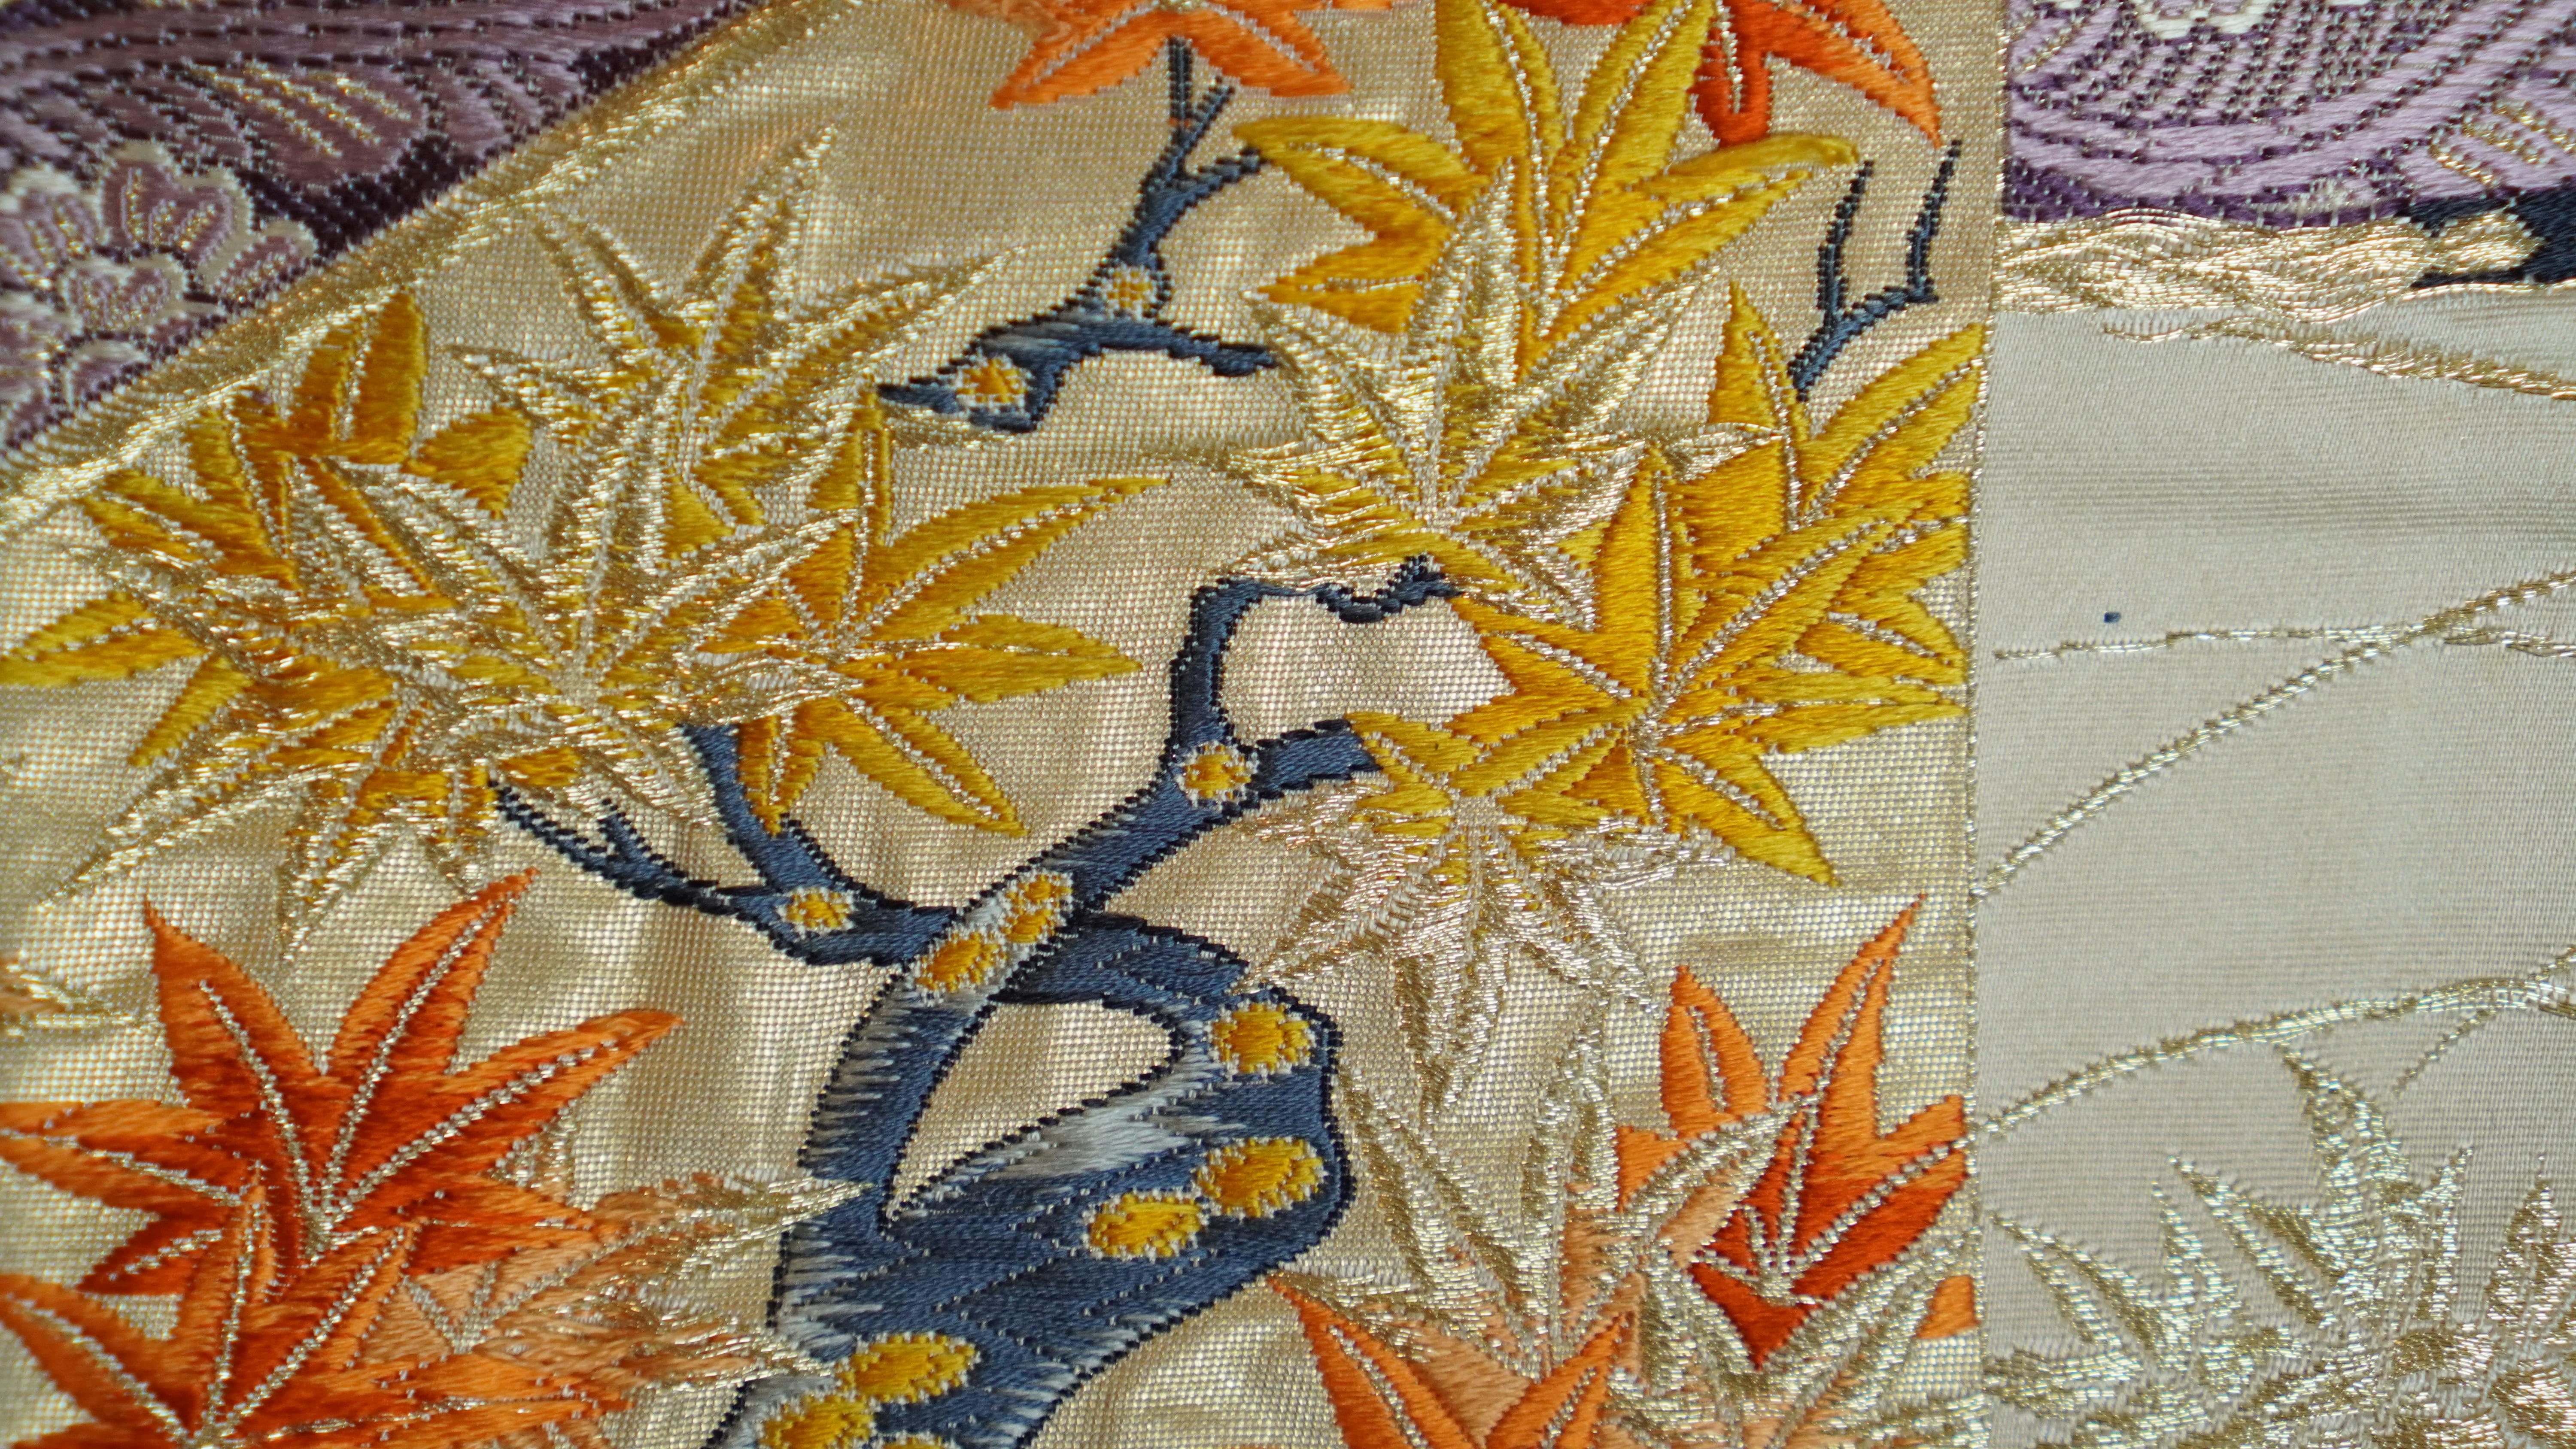  Japanese Art / Kimono Art / Tapestry, the King of Peacocks 4